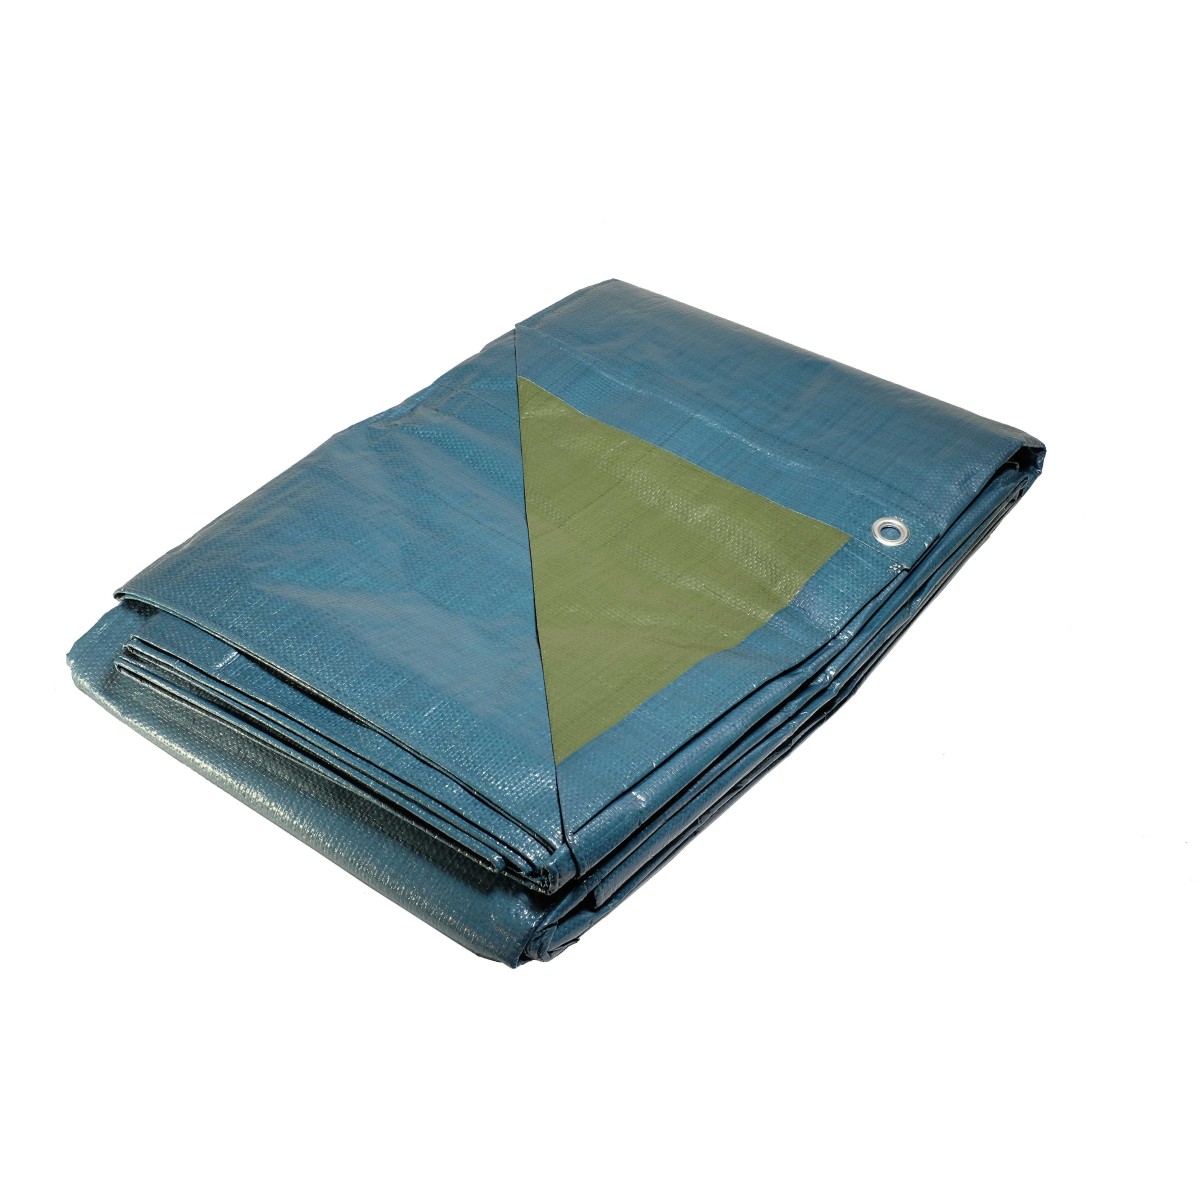 Bâche plastique bleue et verte 150g /m² - bâche de protection 2x3 m